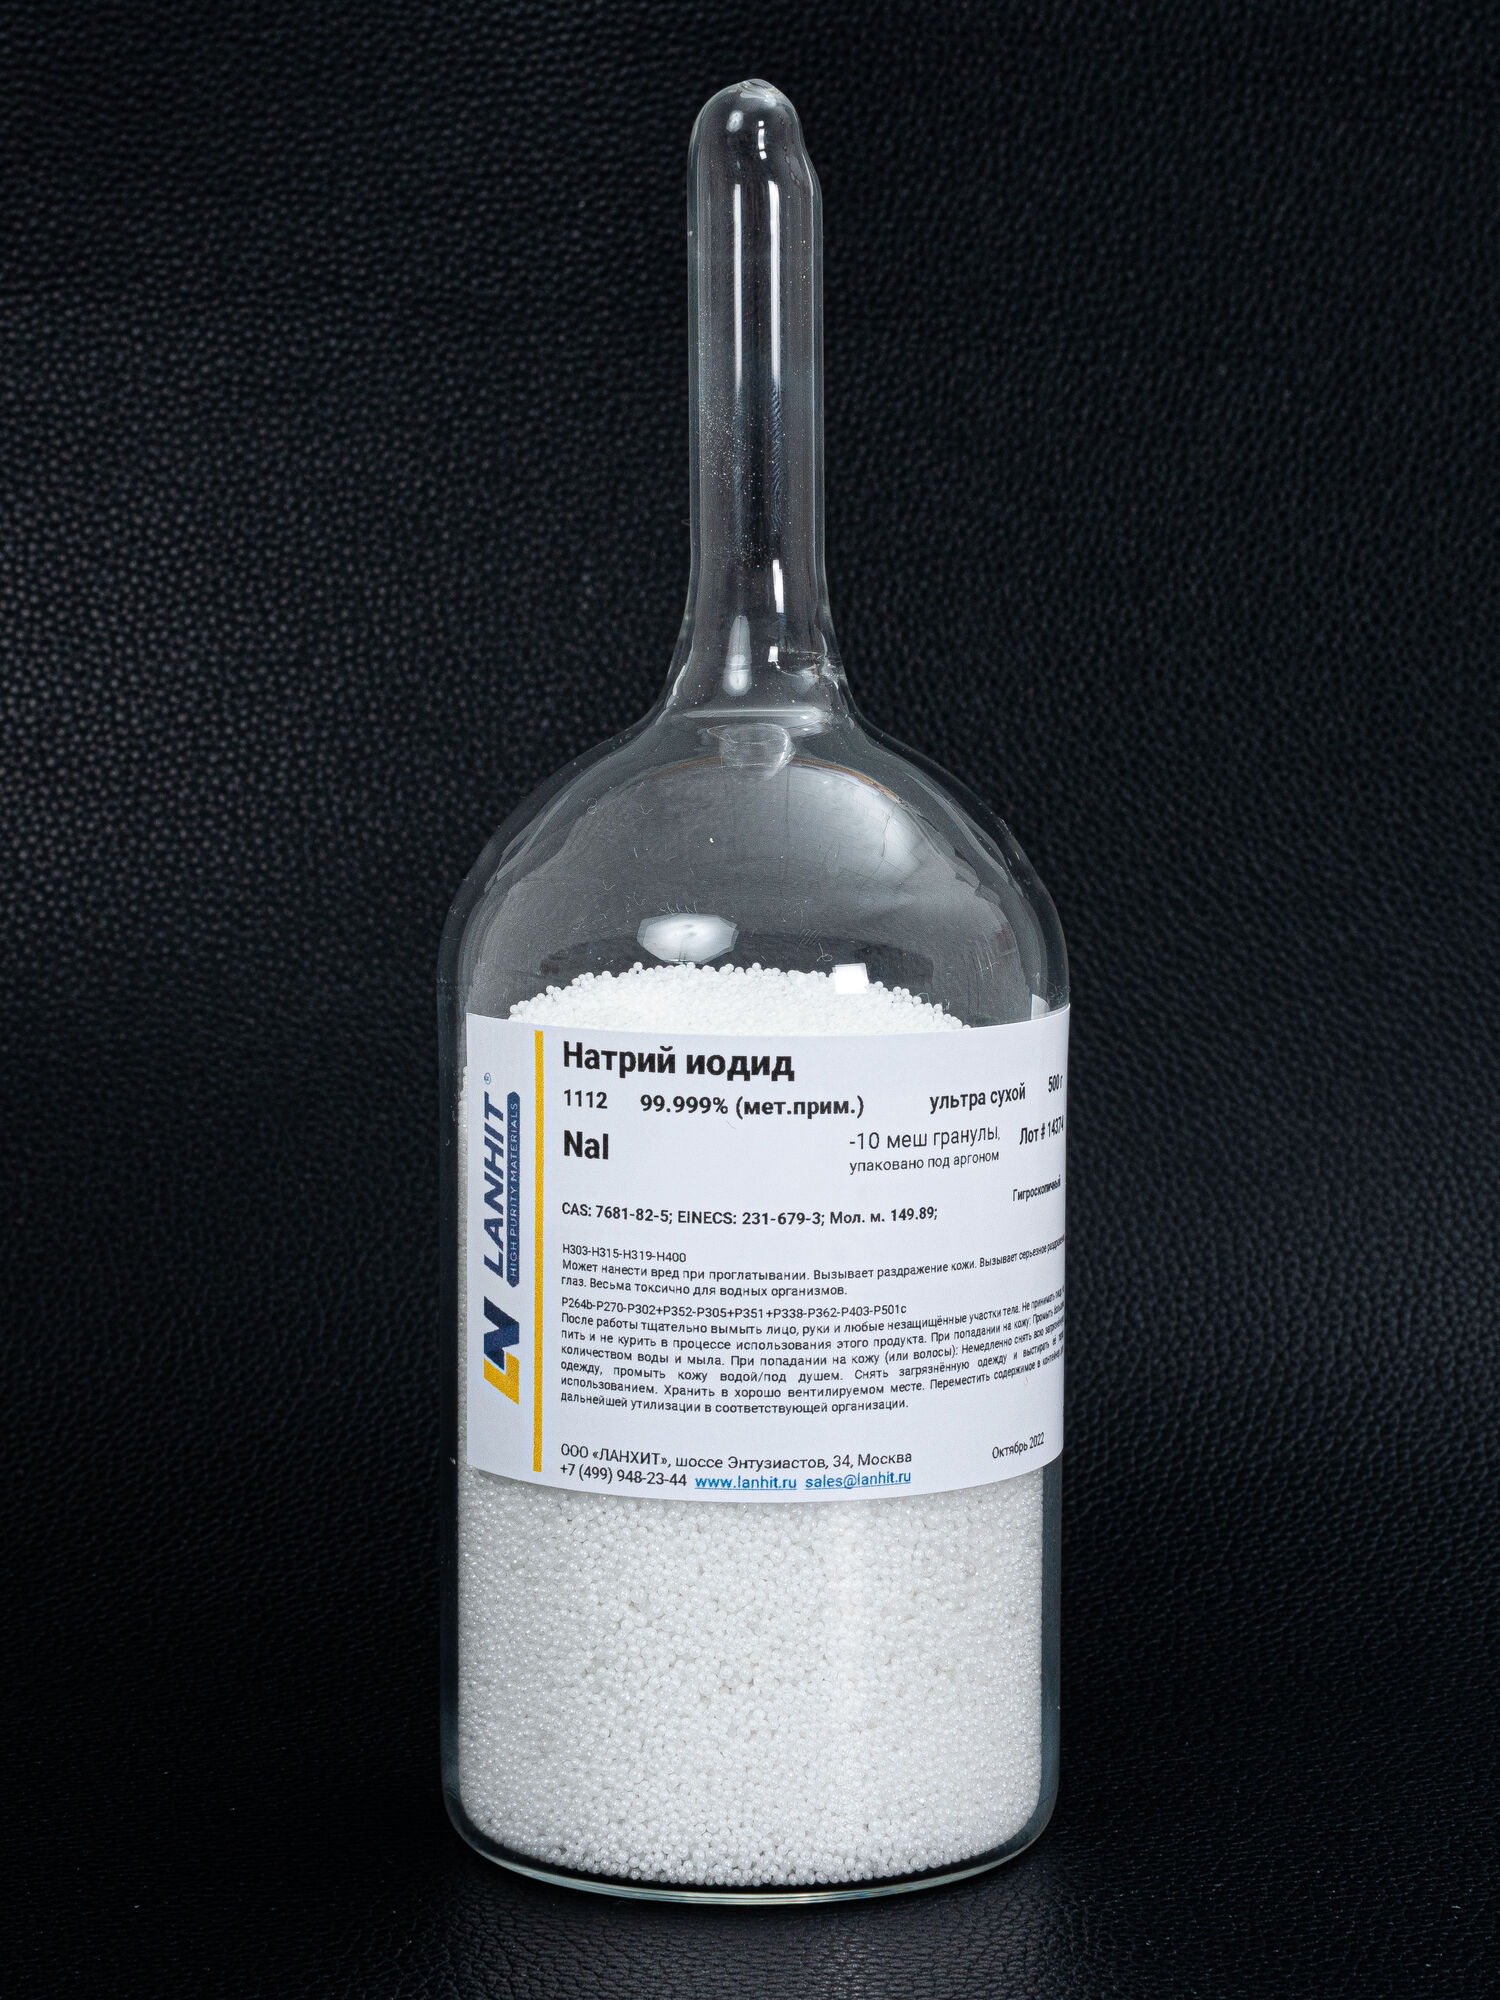 Натрий иодид, ультра сухой, 99.999% (мет.прим), -10 меш гранулы